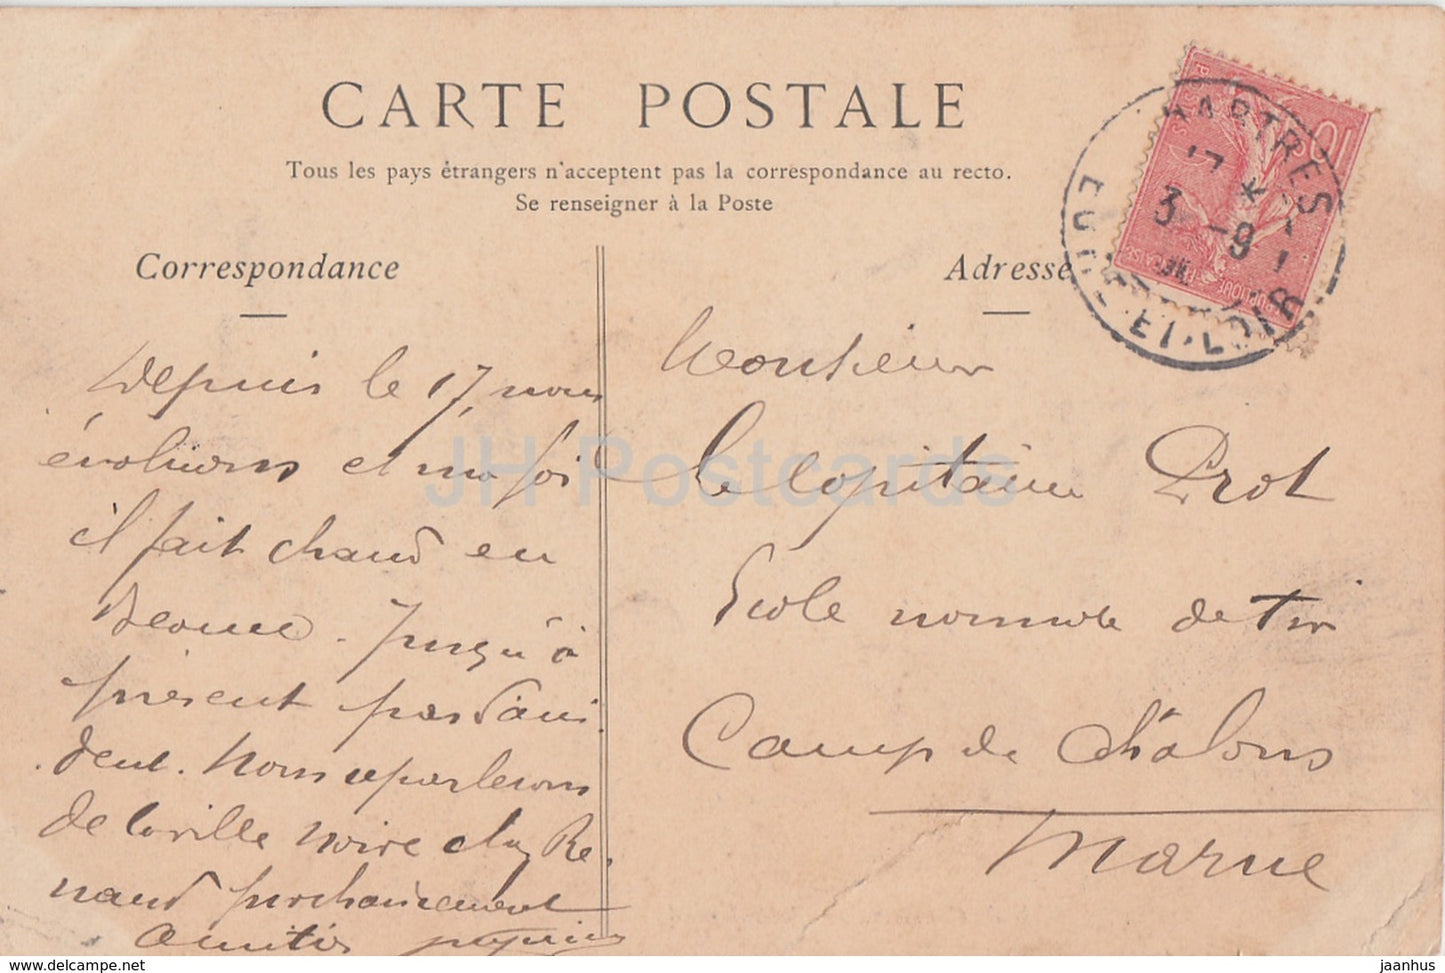 Cathédrale de Chartres - Portail Nord - 9 - cathédrale - carte postale ancienne - 1906 - France - occasion